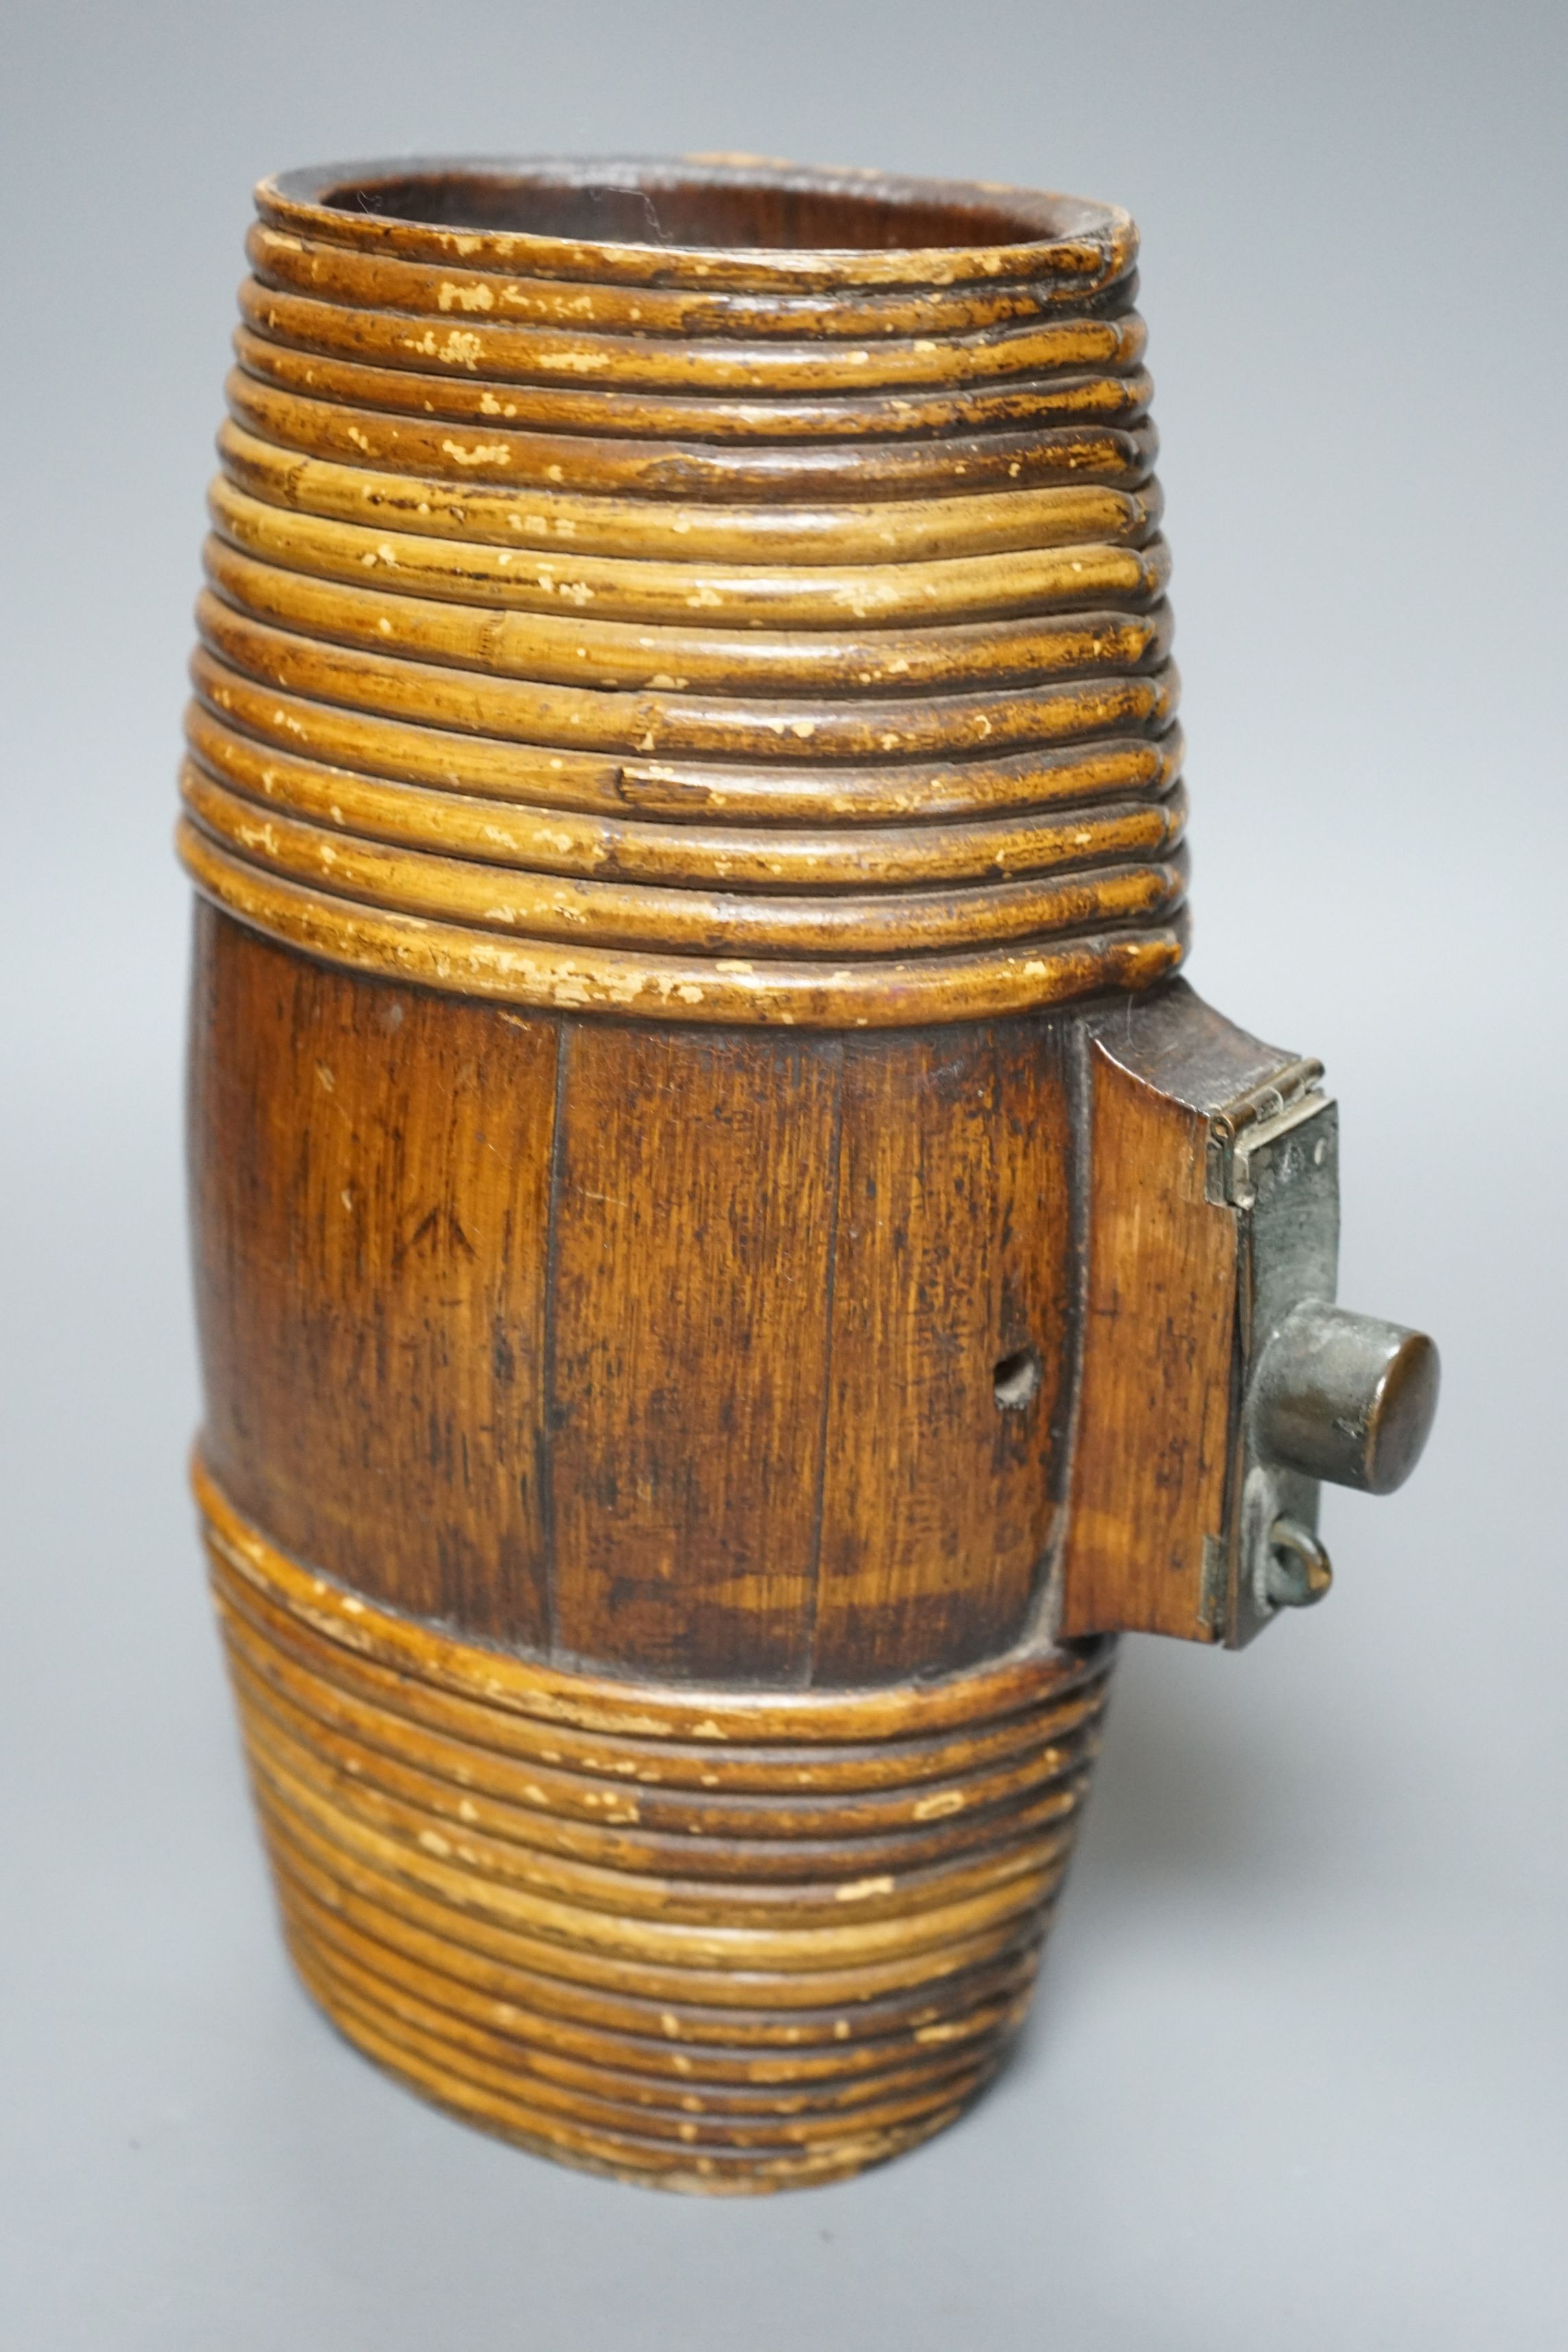 A wooden cider Kestrel, 27cms high